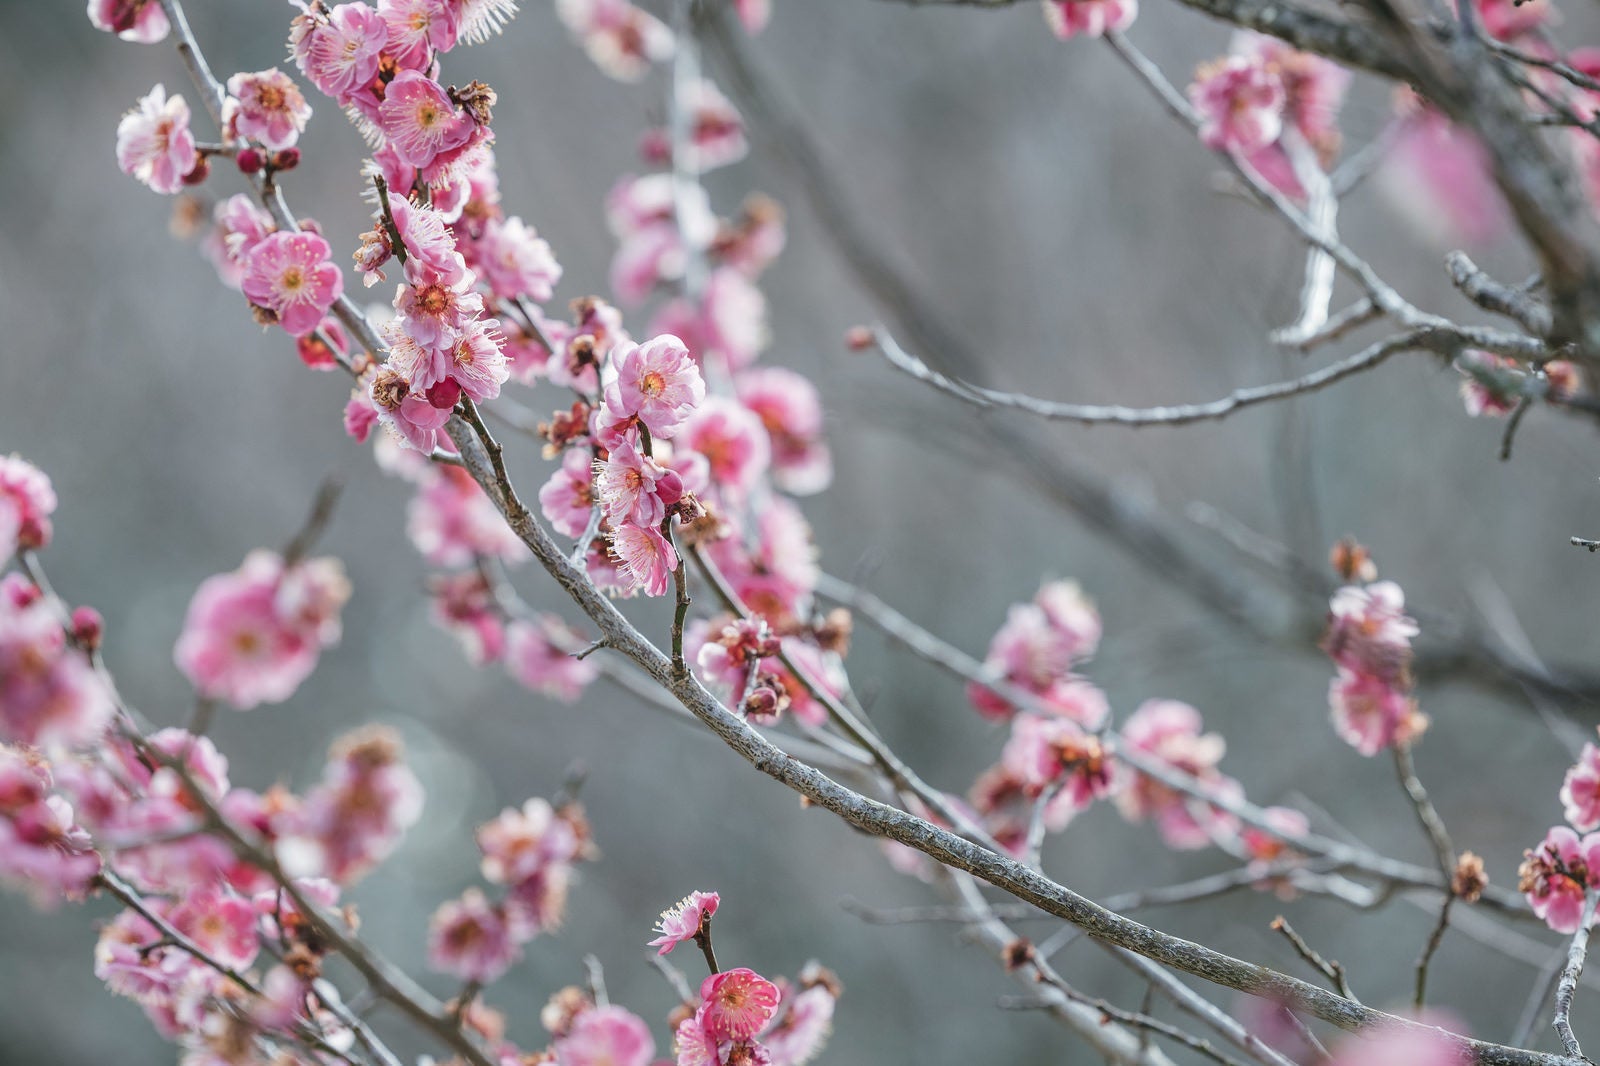 「南相馬で咲いた梅の枝」の写真